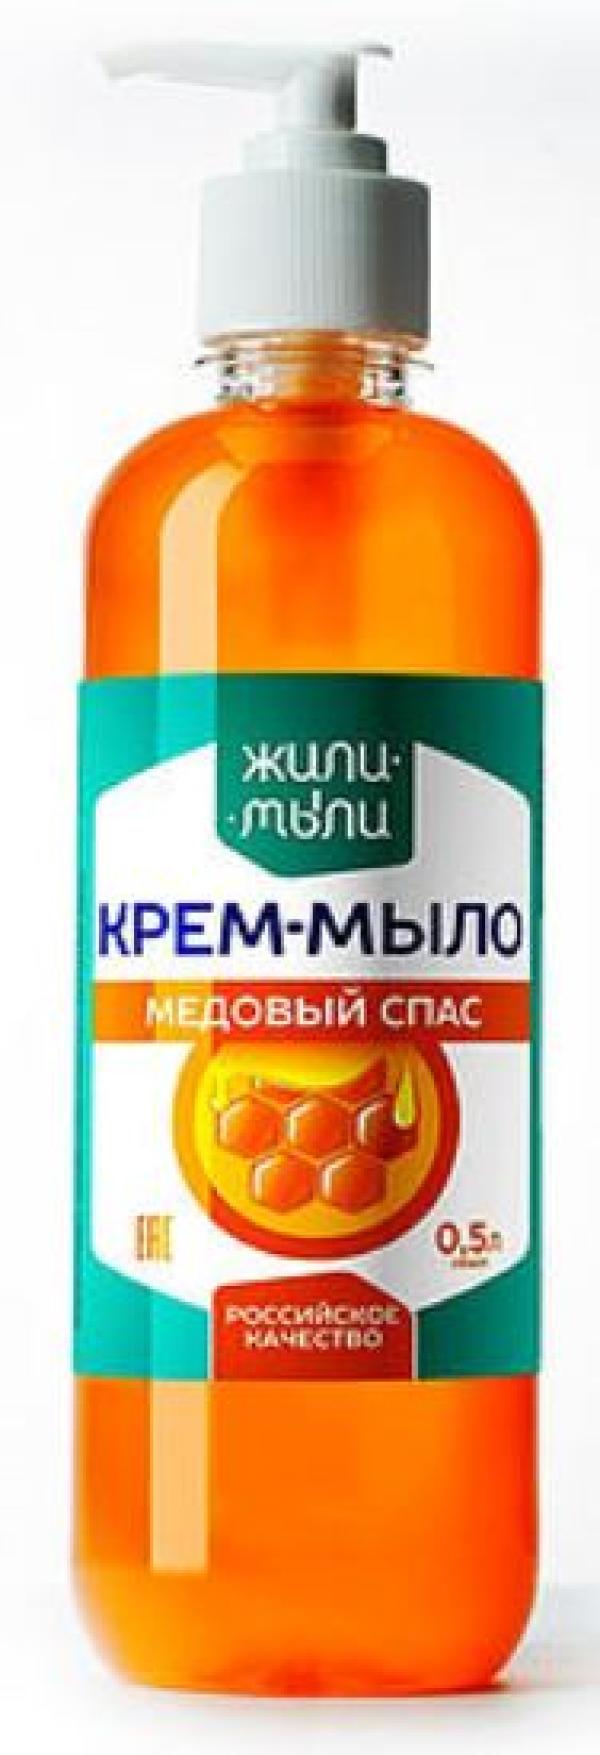 Жидкое крем-мыло Жили Мыли Медовый спас, 0.5л